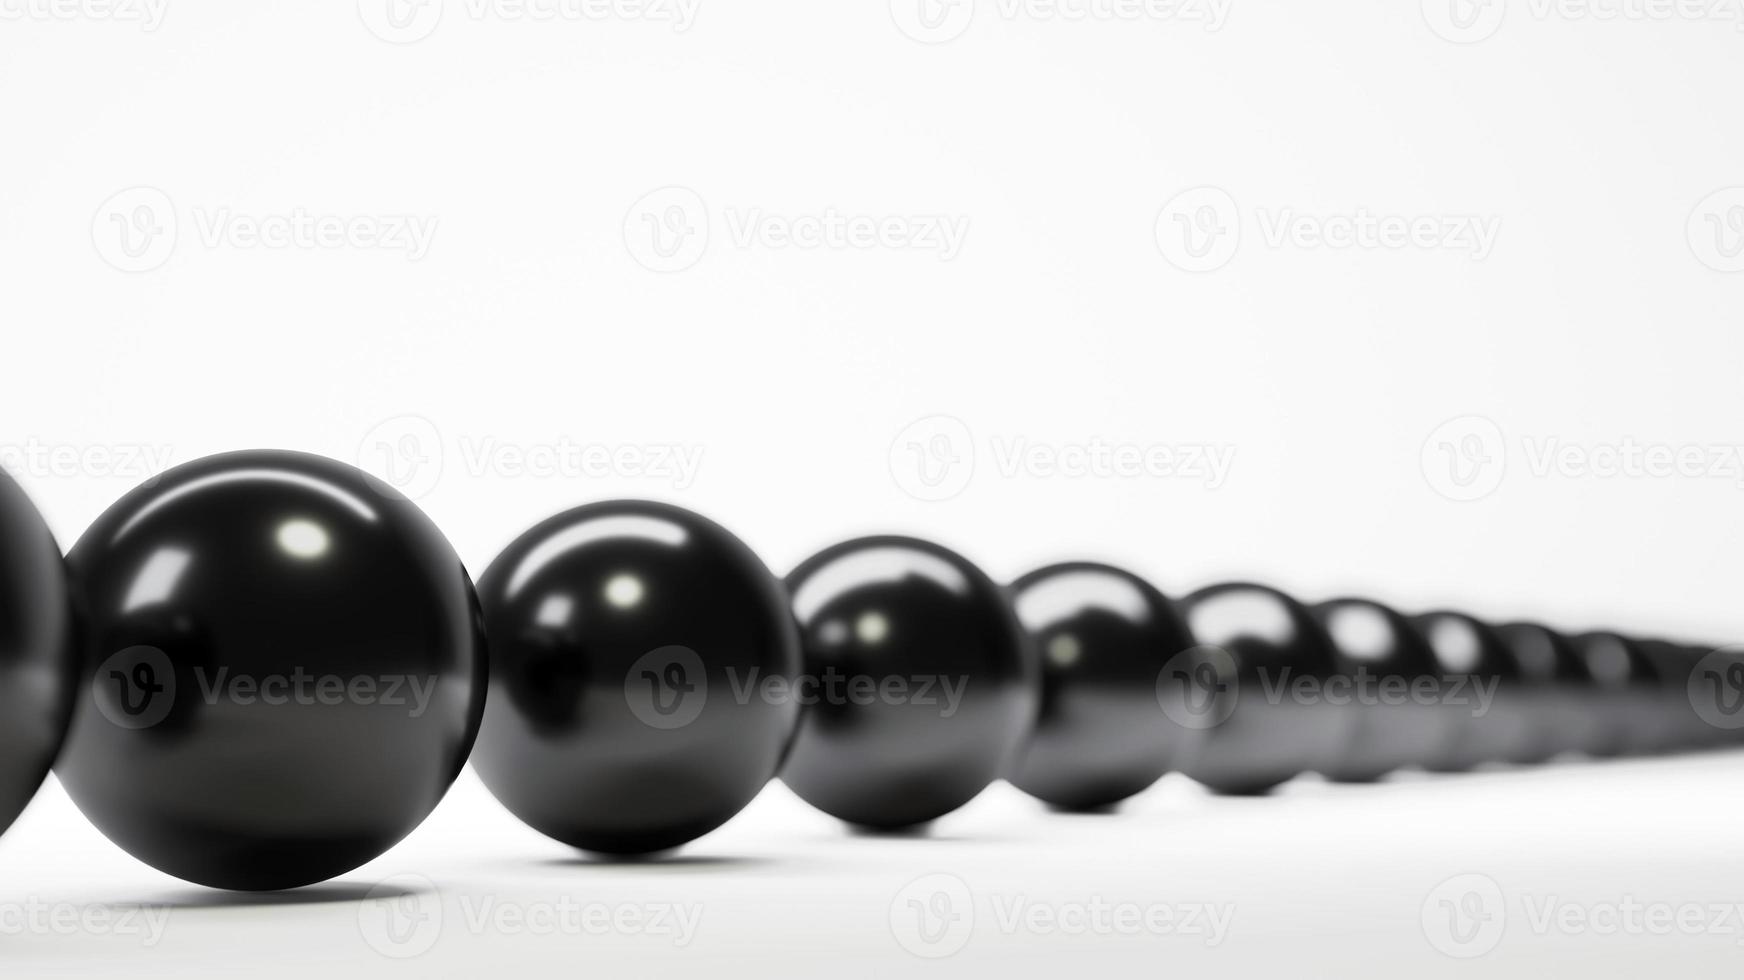 hilera de bolas negras profundidad de campo foto